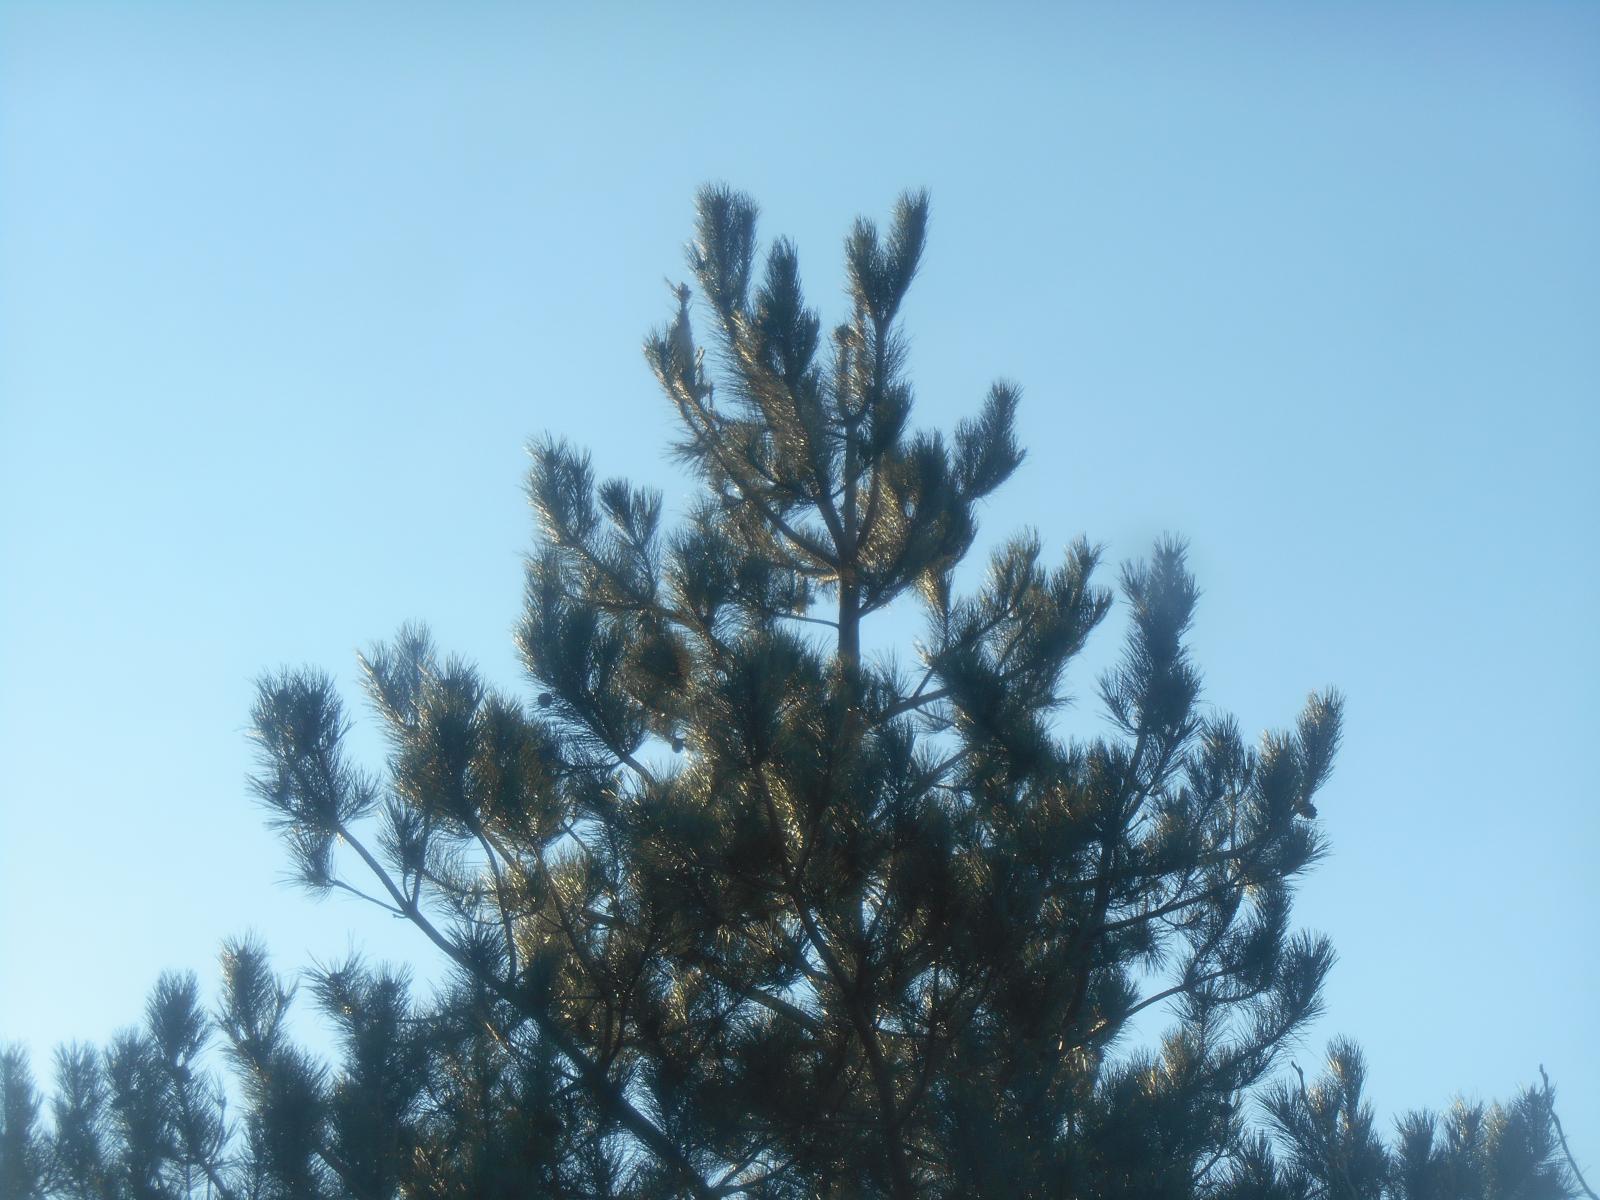 Le pin dans le ciel (Les Moutiers en Retz)